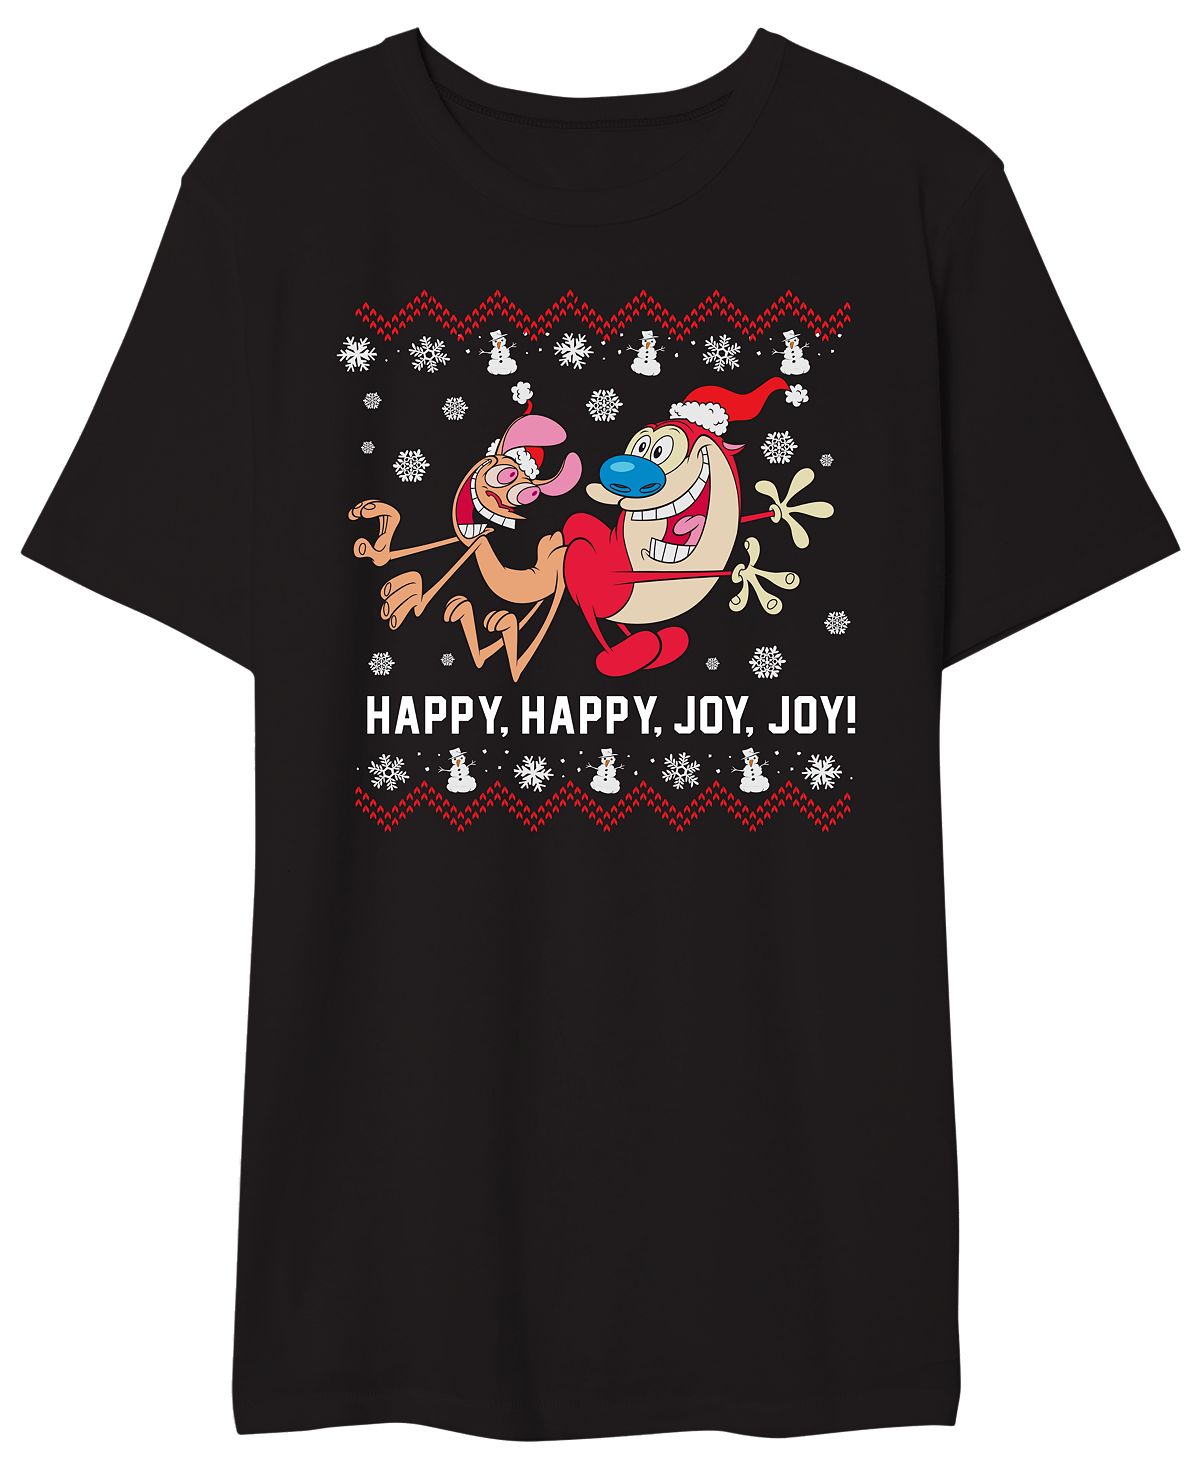 Мужская футболка с графическим рисунком happy happy joy joy AIRWAVES, мульти